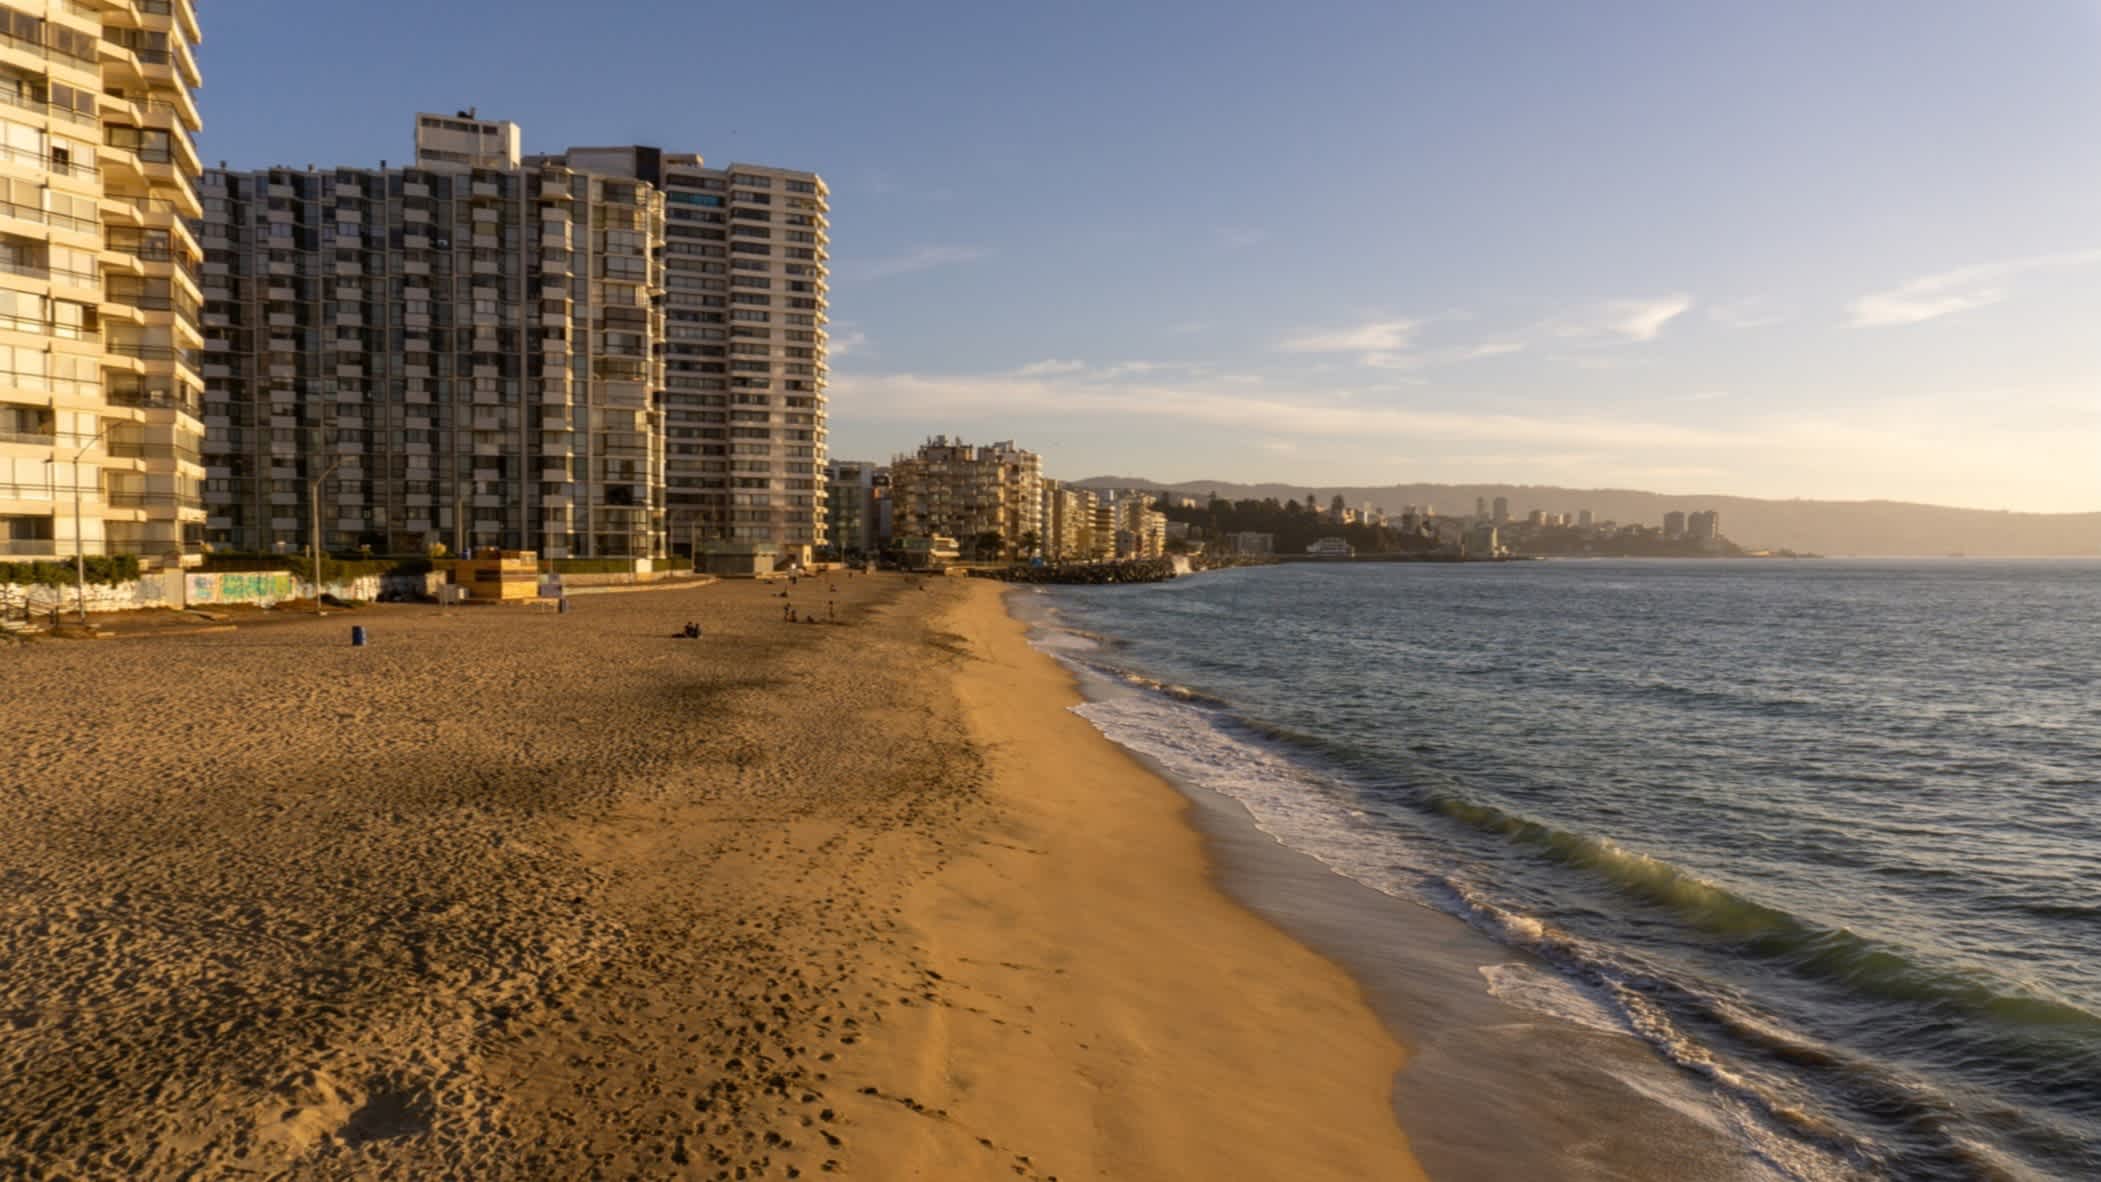 Bild vom Acapulco Strand nahe Vina del Mar in Chile mit Blick auf den goldenen Sand, das dunkle Meer sowie den Hochhäusern an der Promenade.